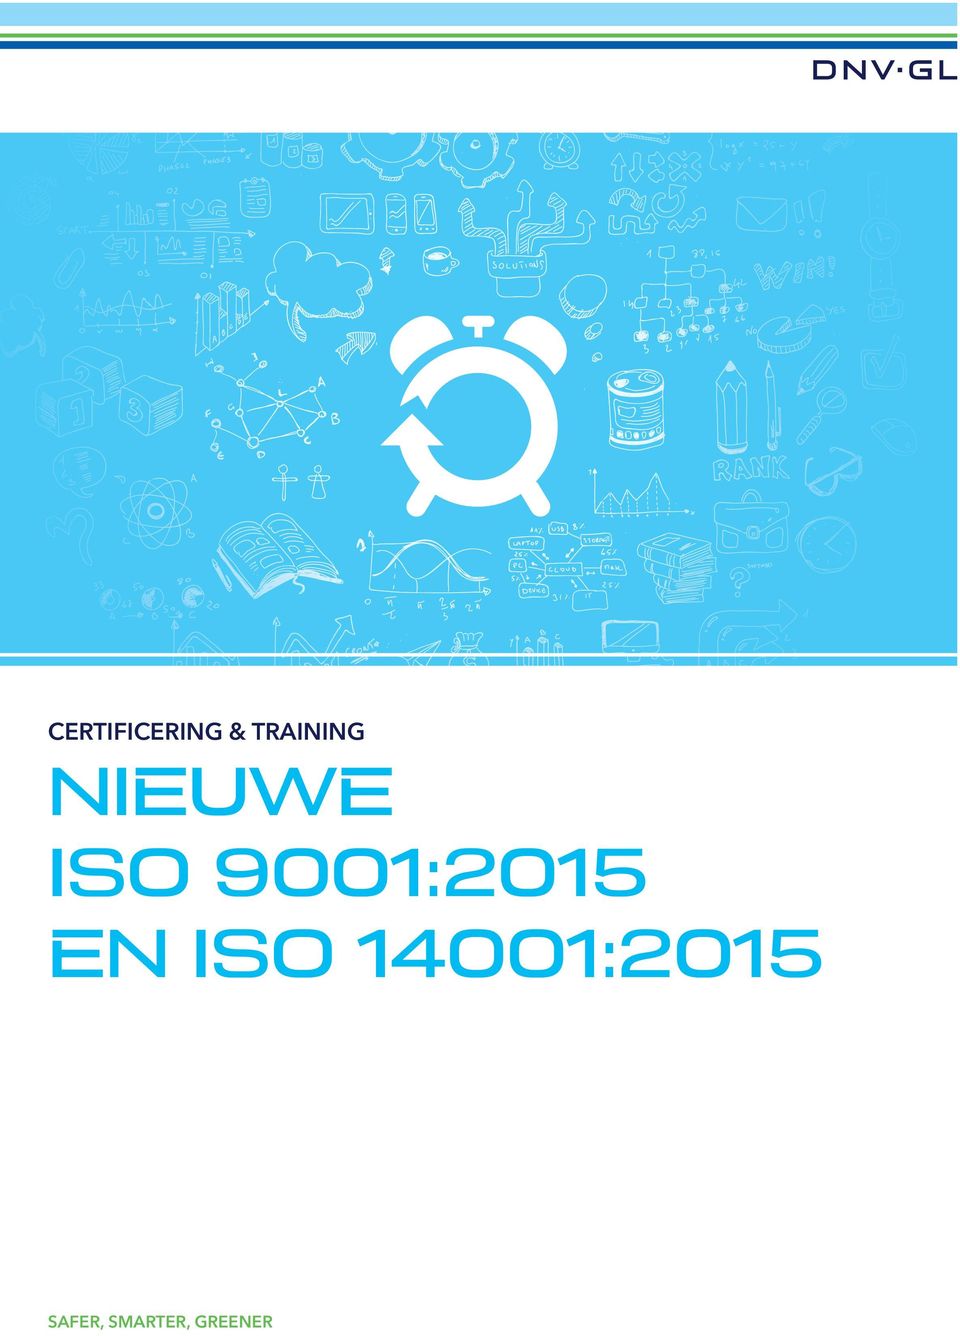 9001:2015 EN ISO